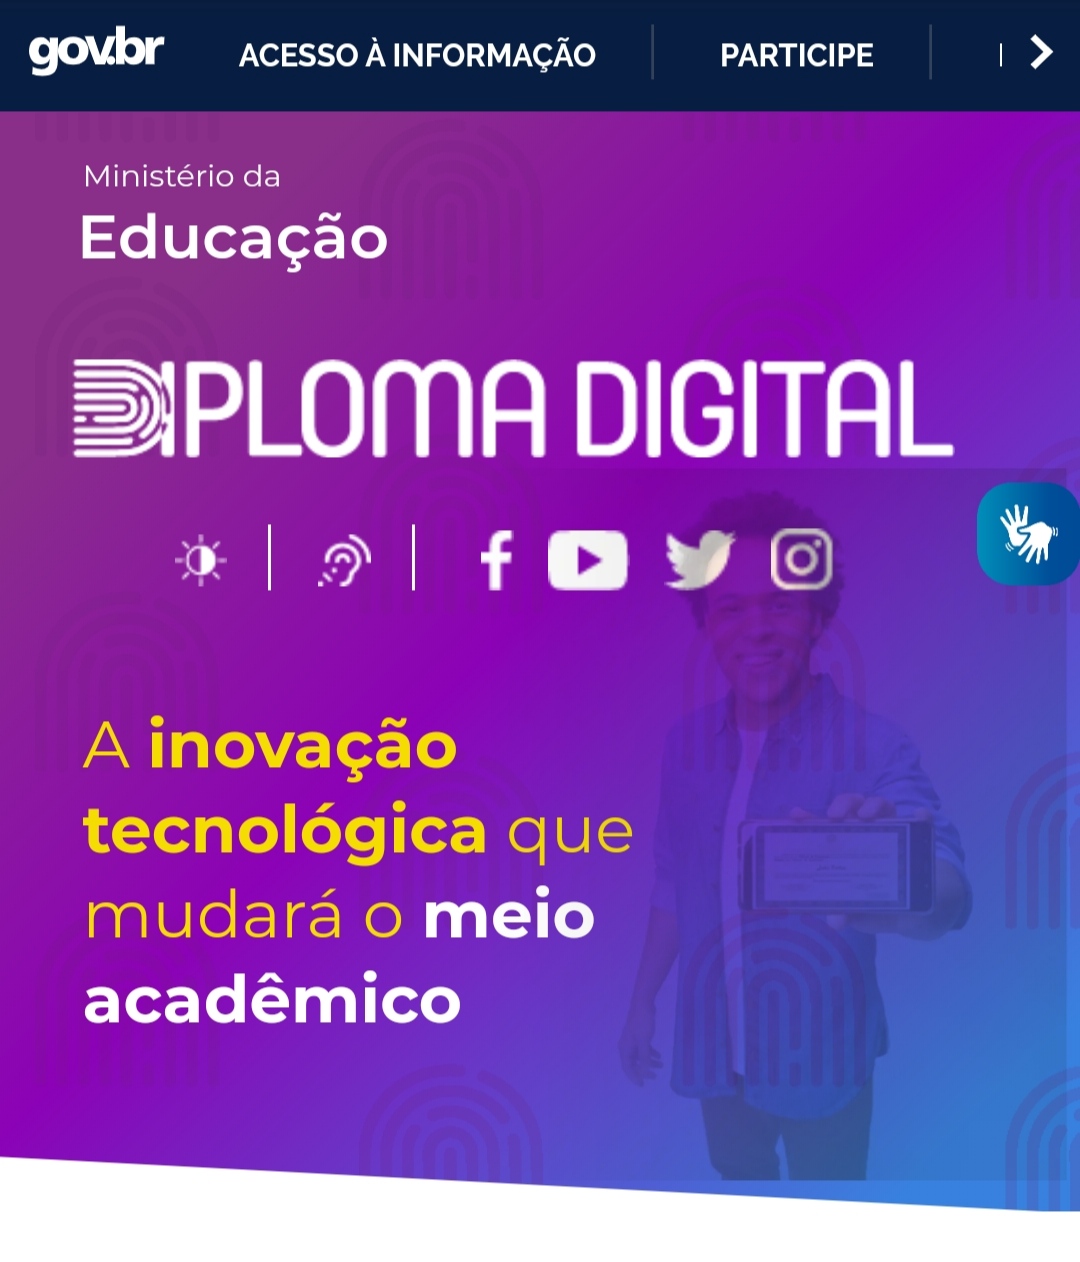 Photo of Governo anuncia versão digital de diplomas com custo 80% menor